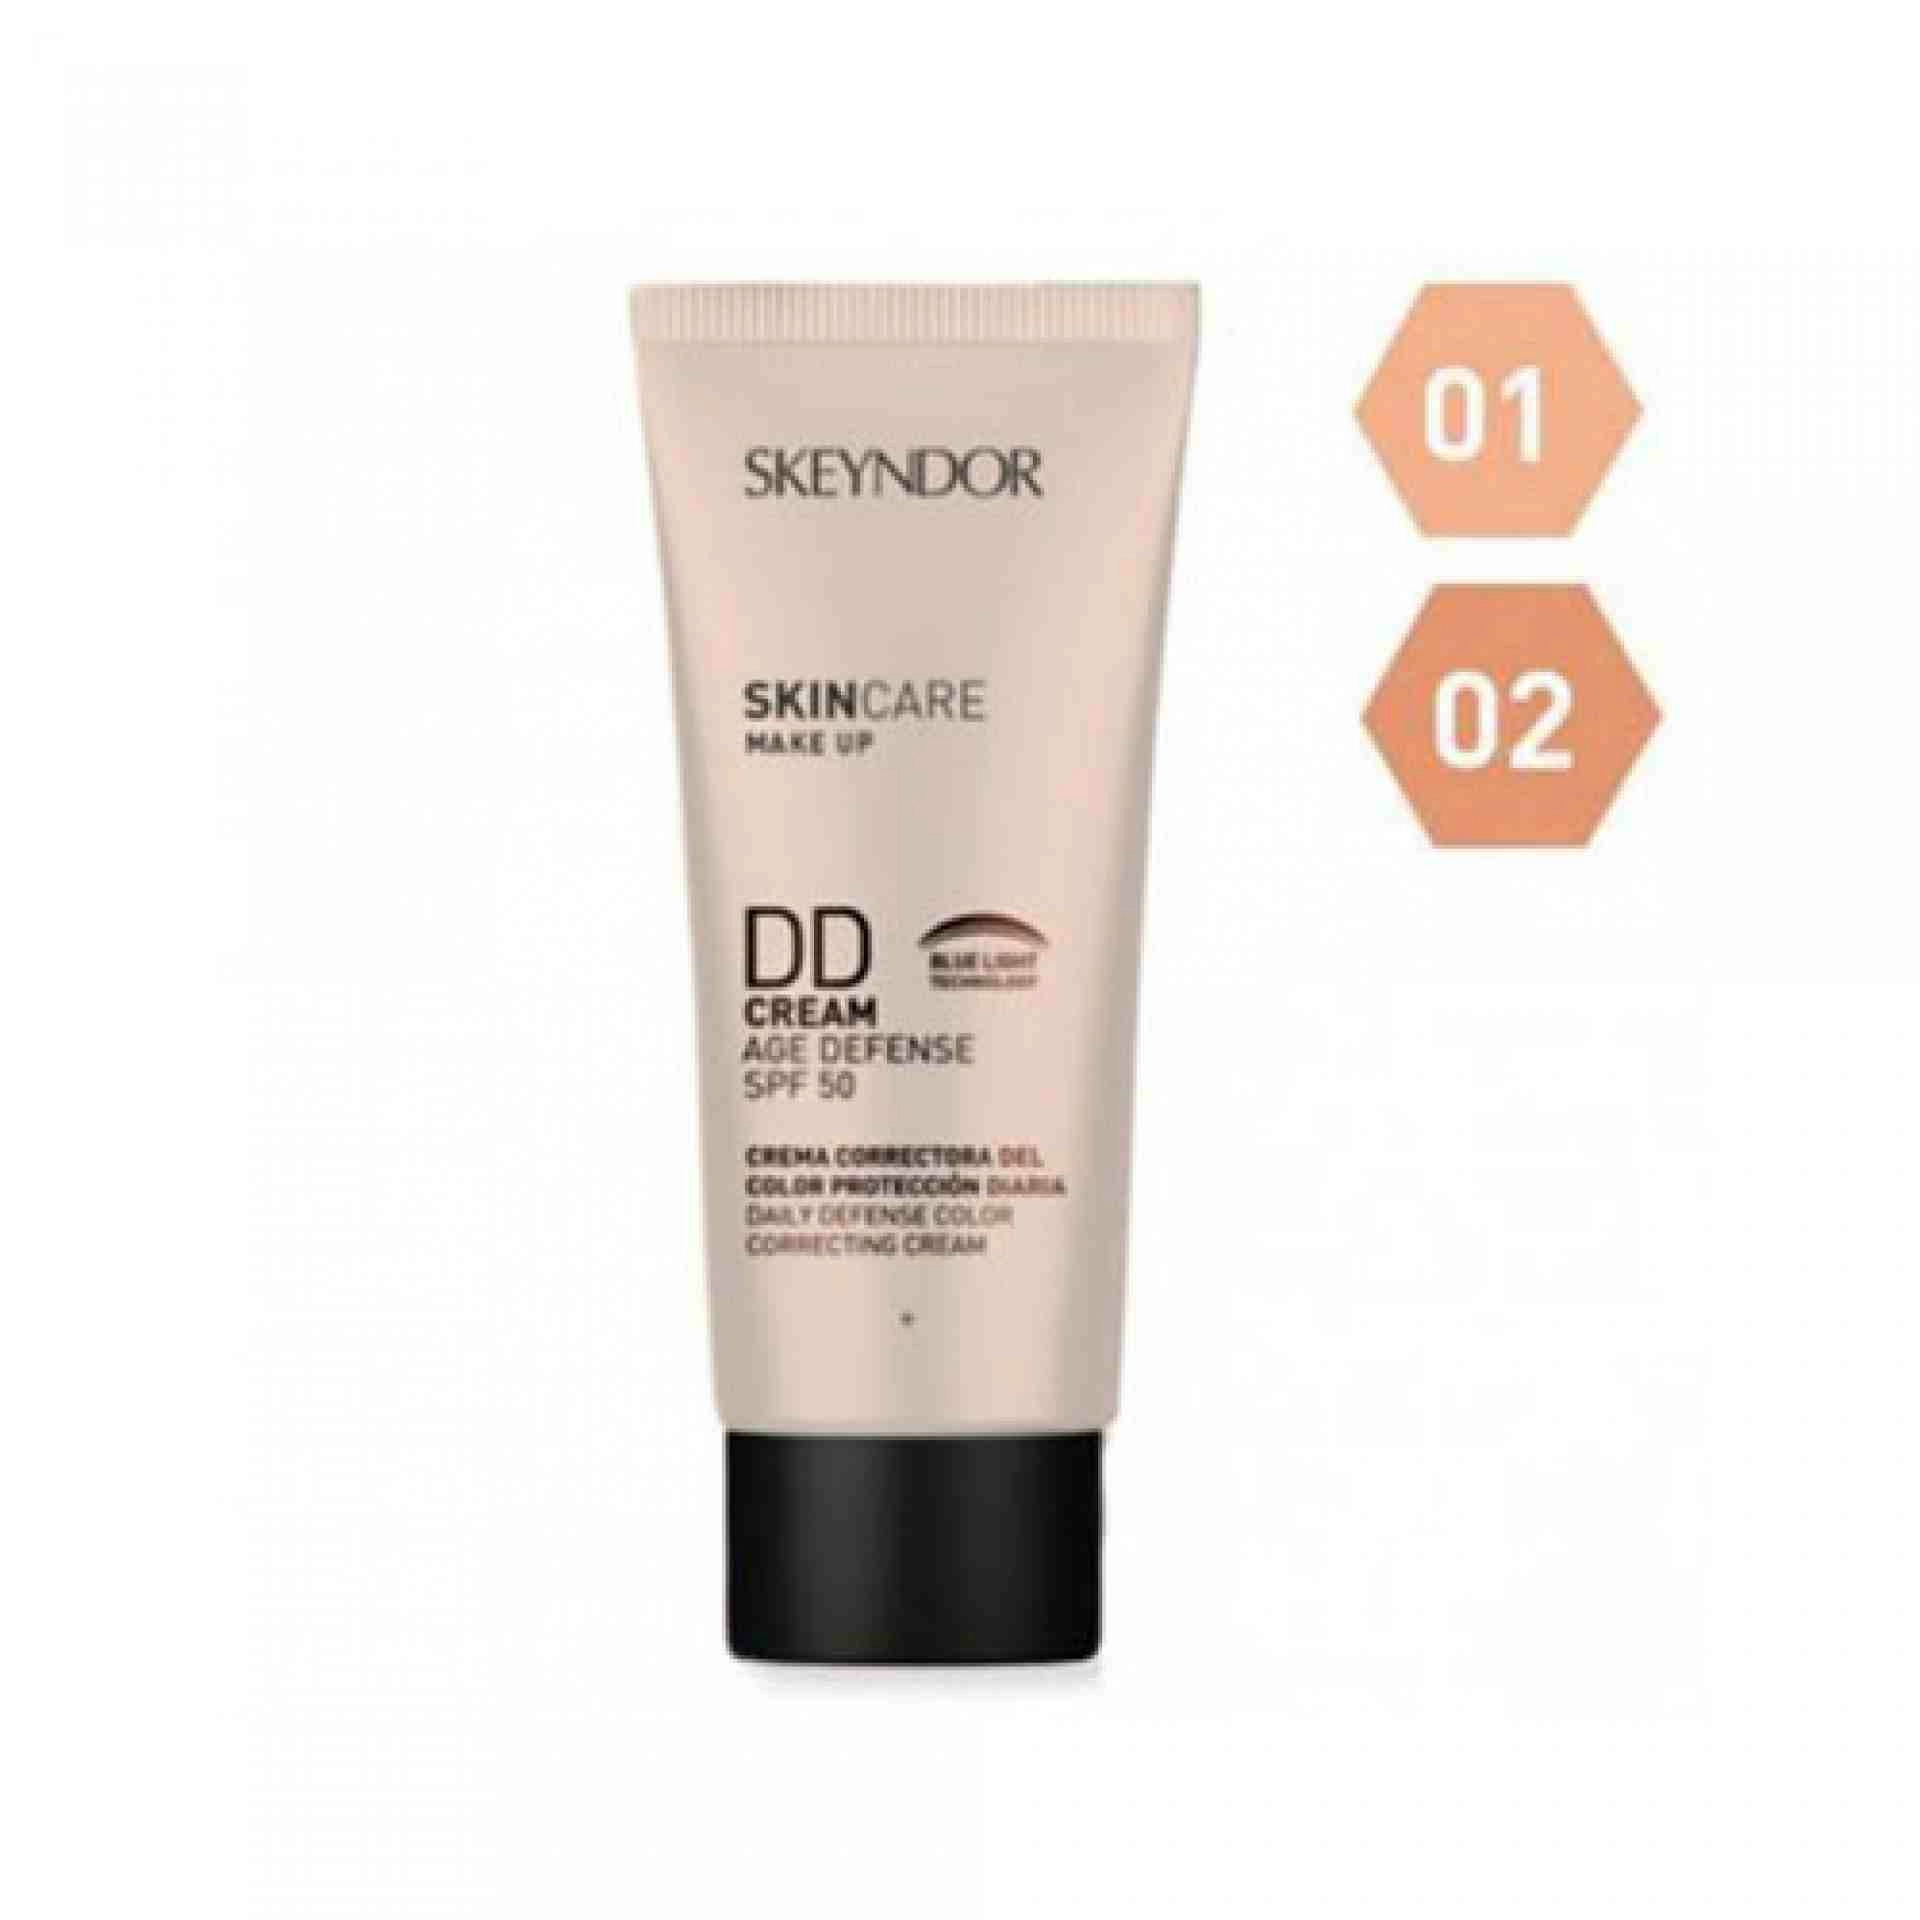 DD Cream Age Defence SPF50 |  Crema Antiedad con Color 40ml - Skin Care - Skeyndor ®